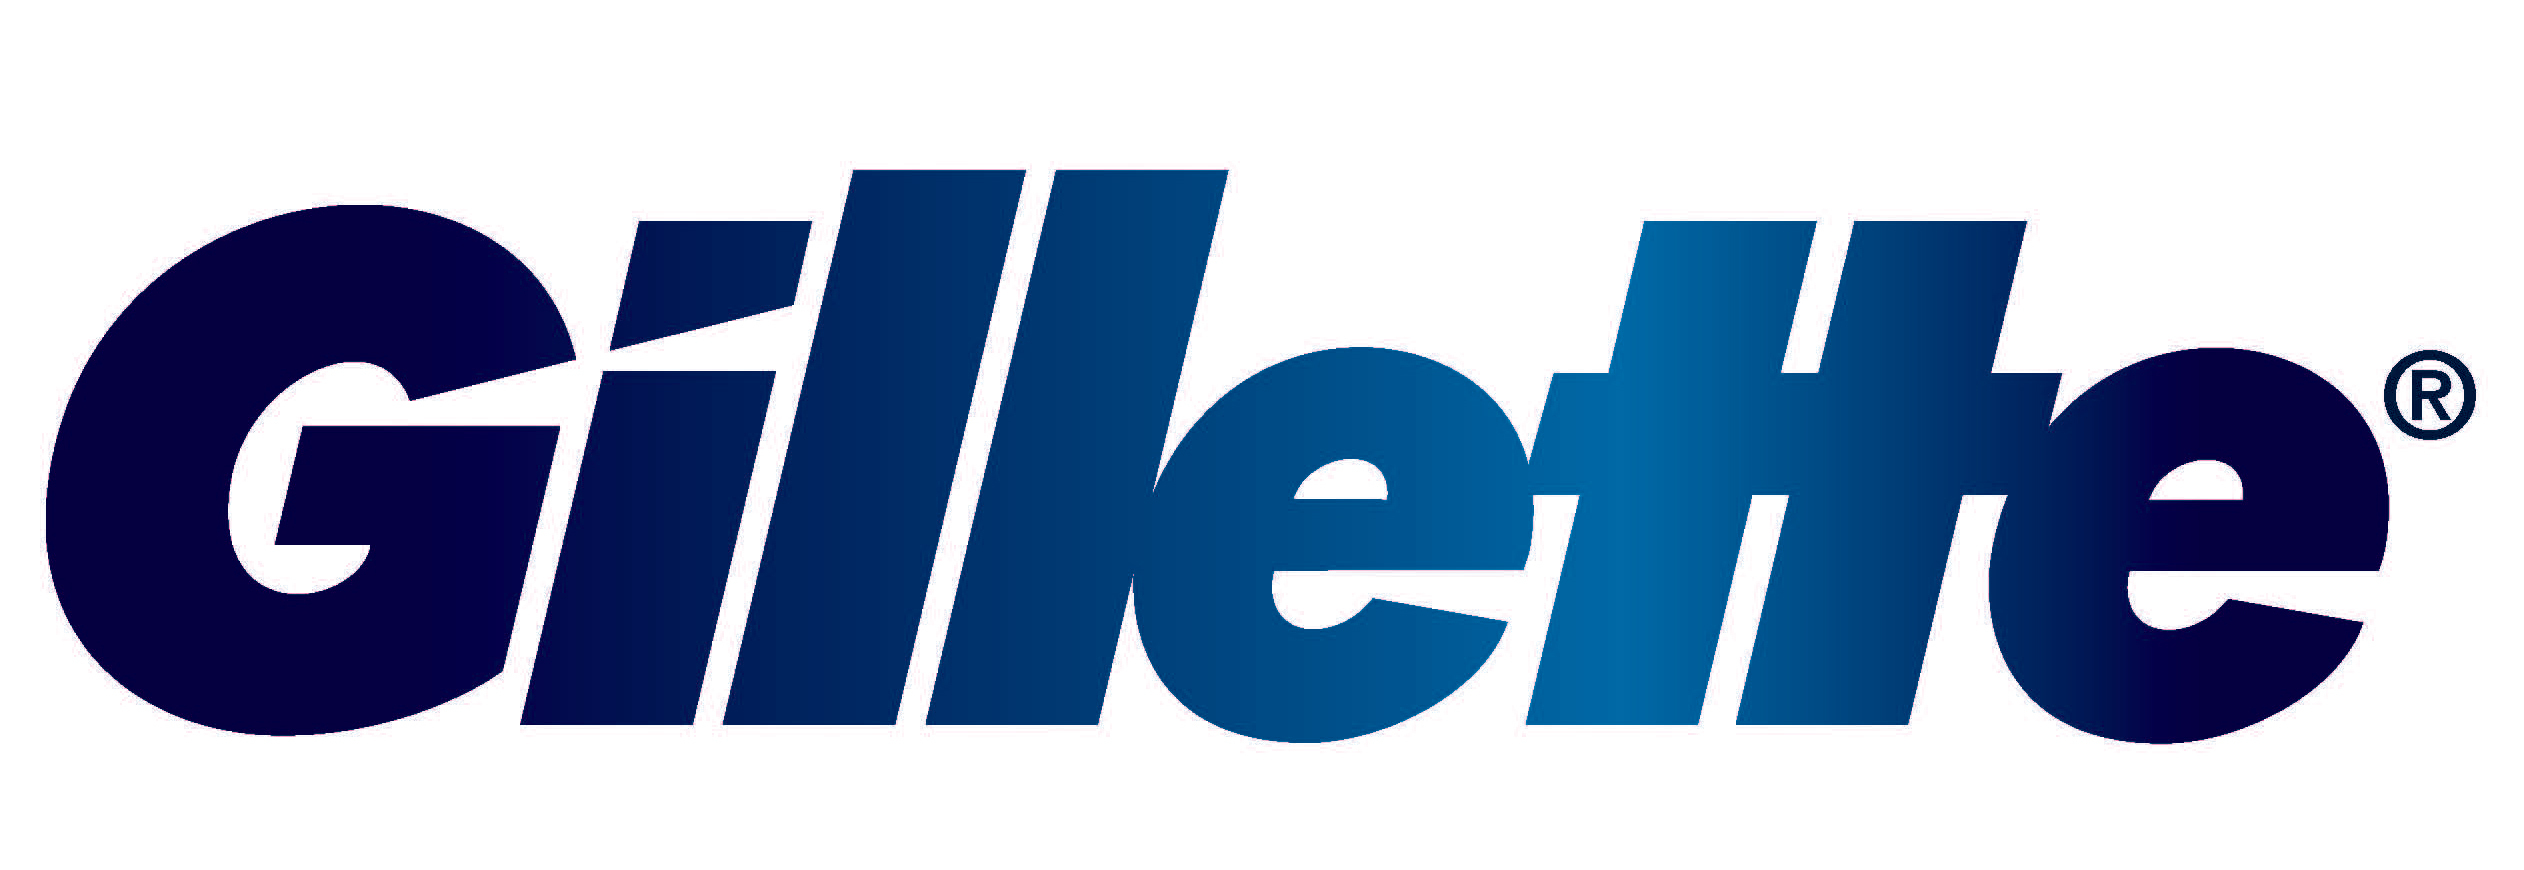 The font of Gillette logo des